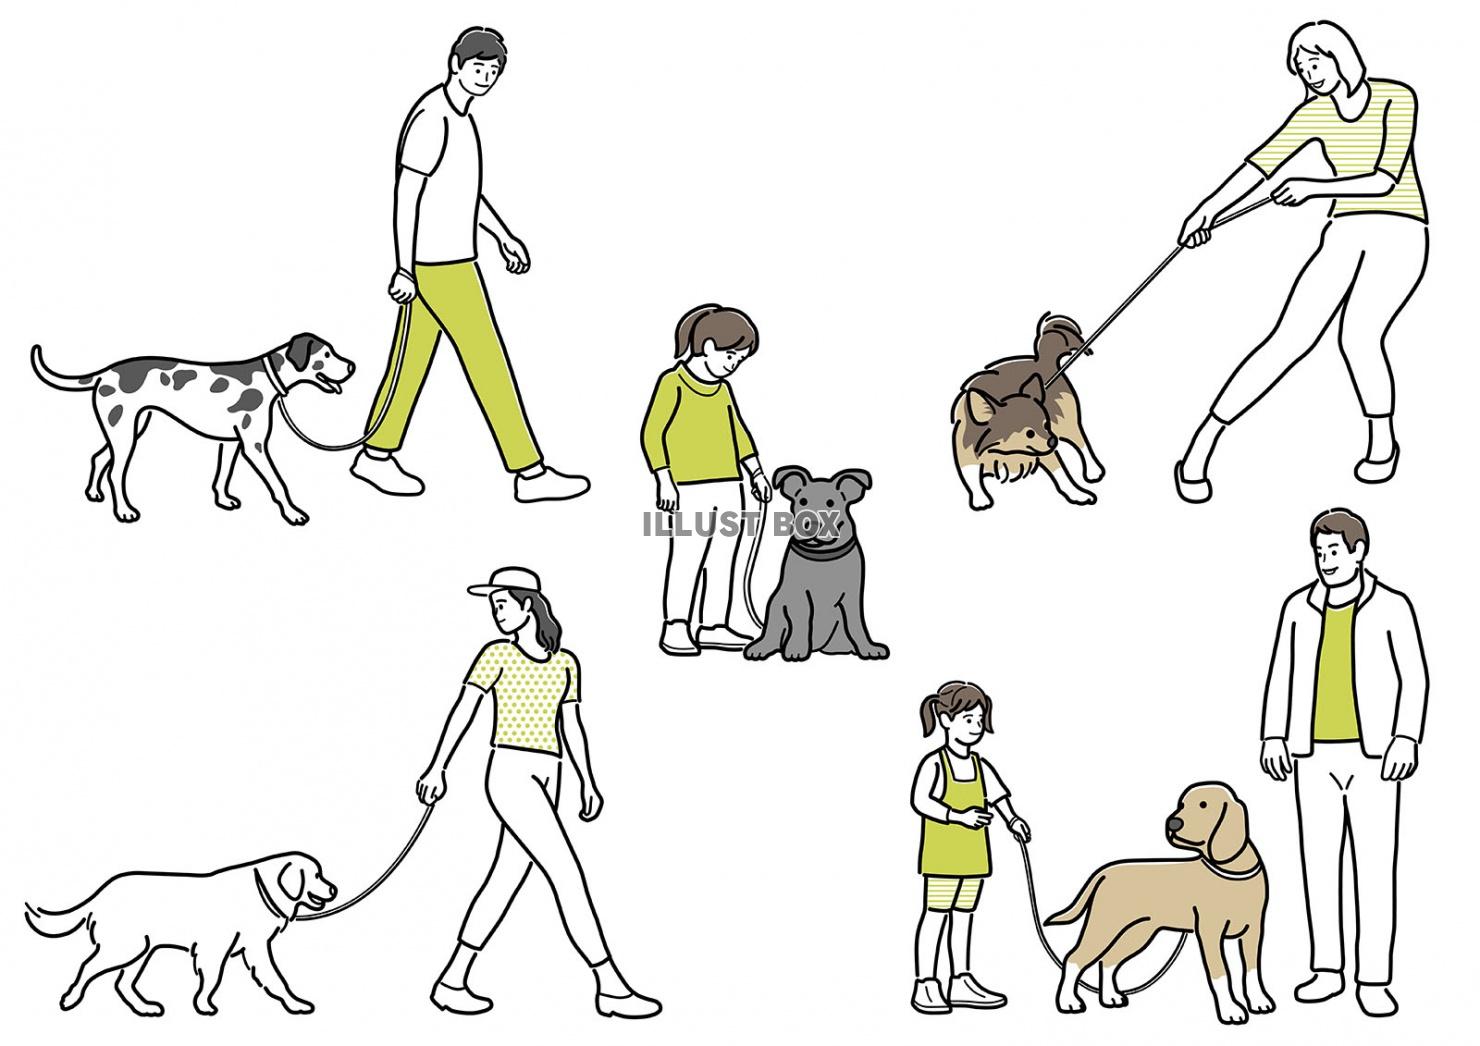 無料イラスト 犬を連れた人物のシンプルな線画イラストセット